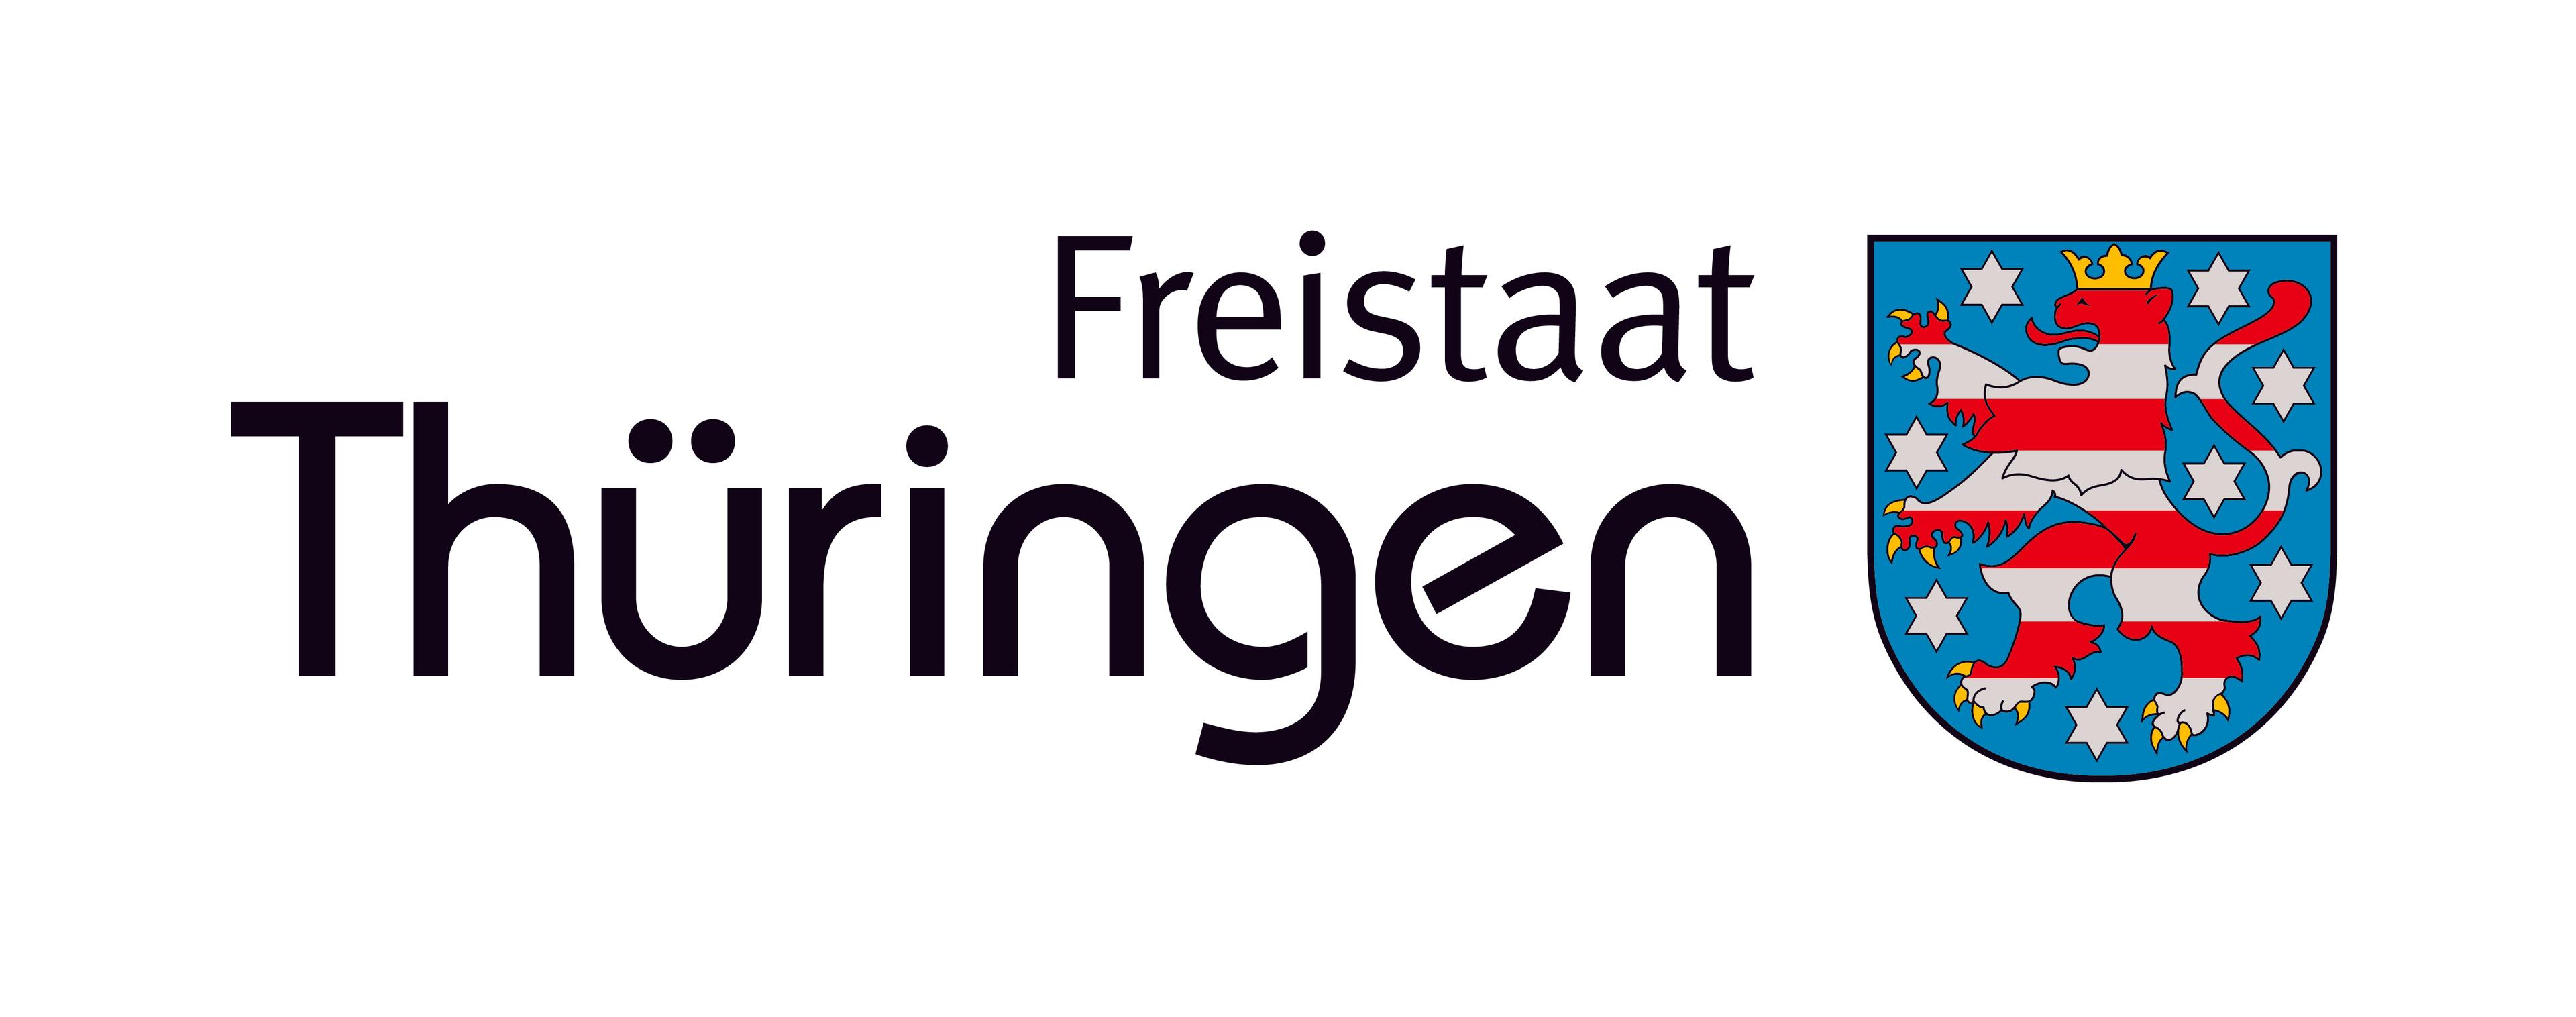 Freistaat Thüringen